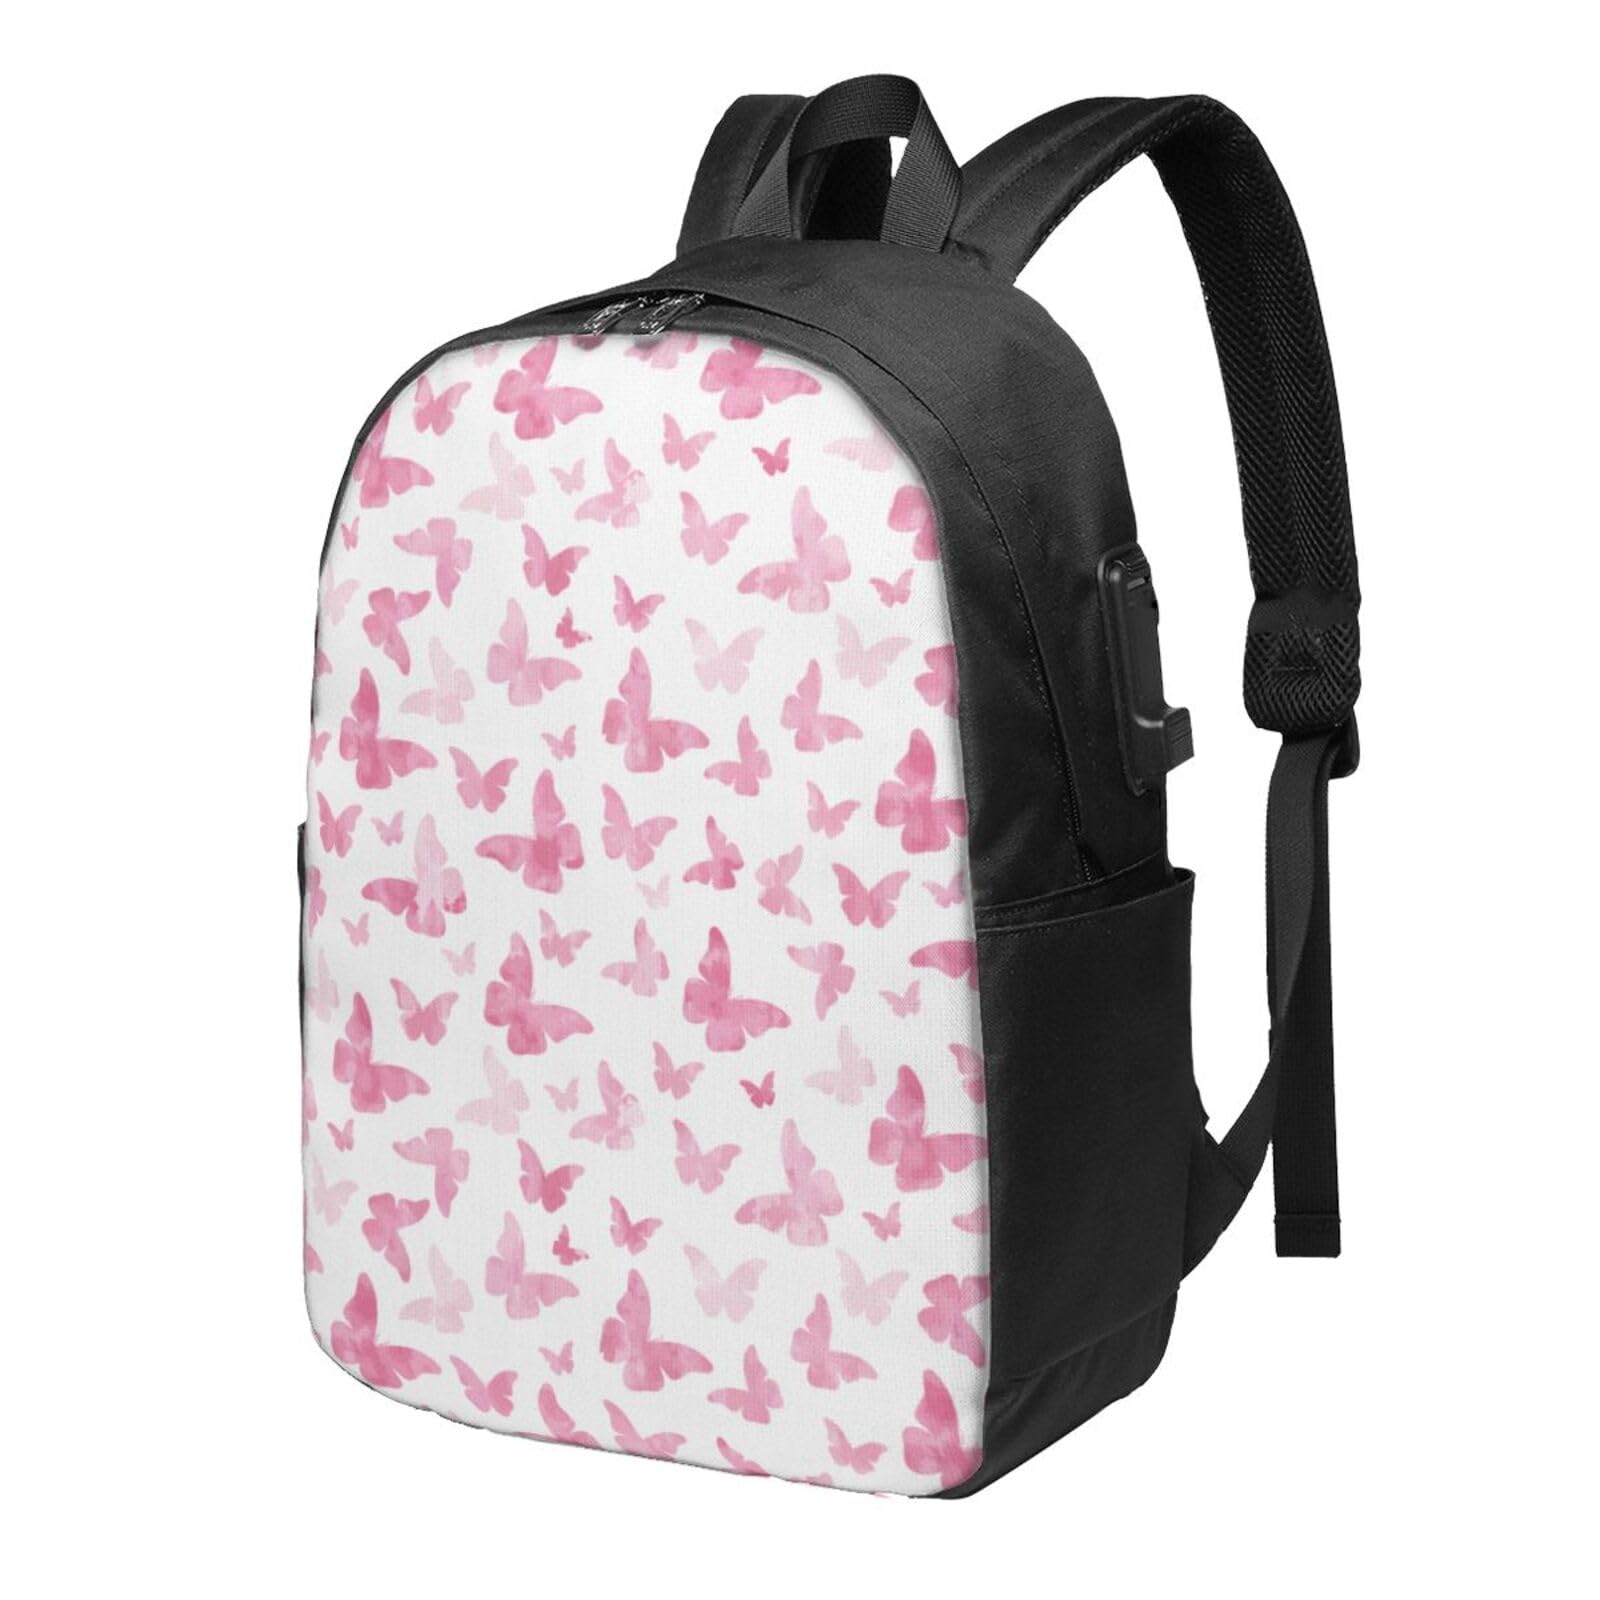 送料無料OUSIKA Pink Butterflies Laptop Backpack With Usb Charging Port Water Resistant Casual Daypacks Travel Bag For Men